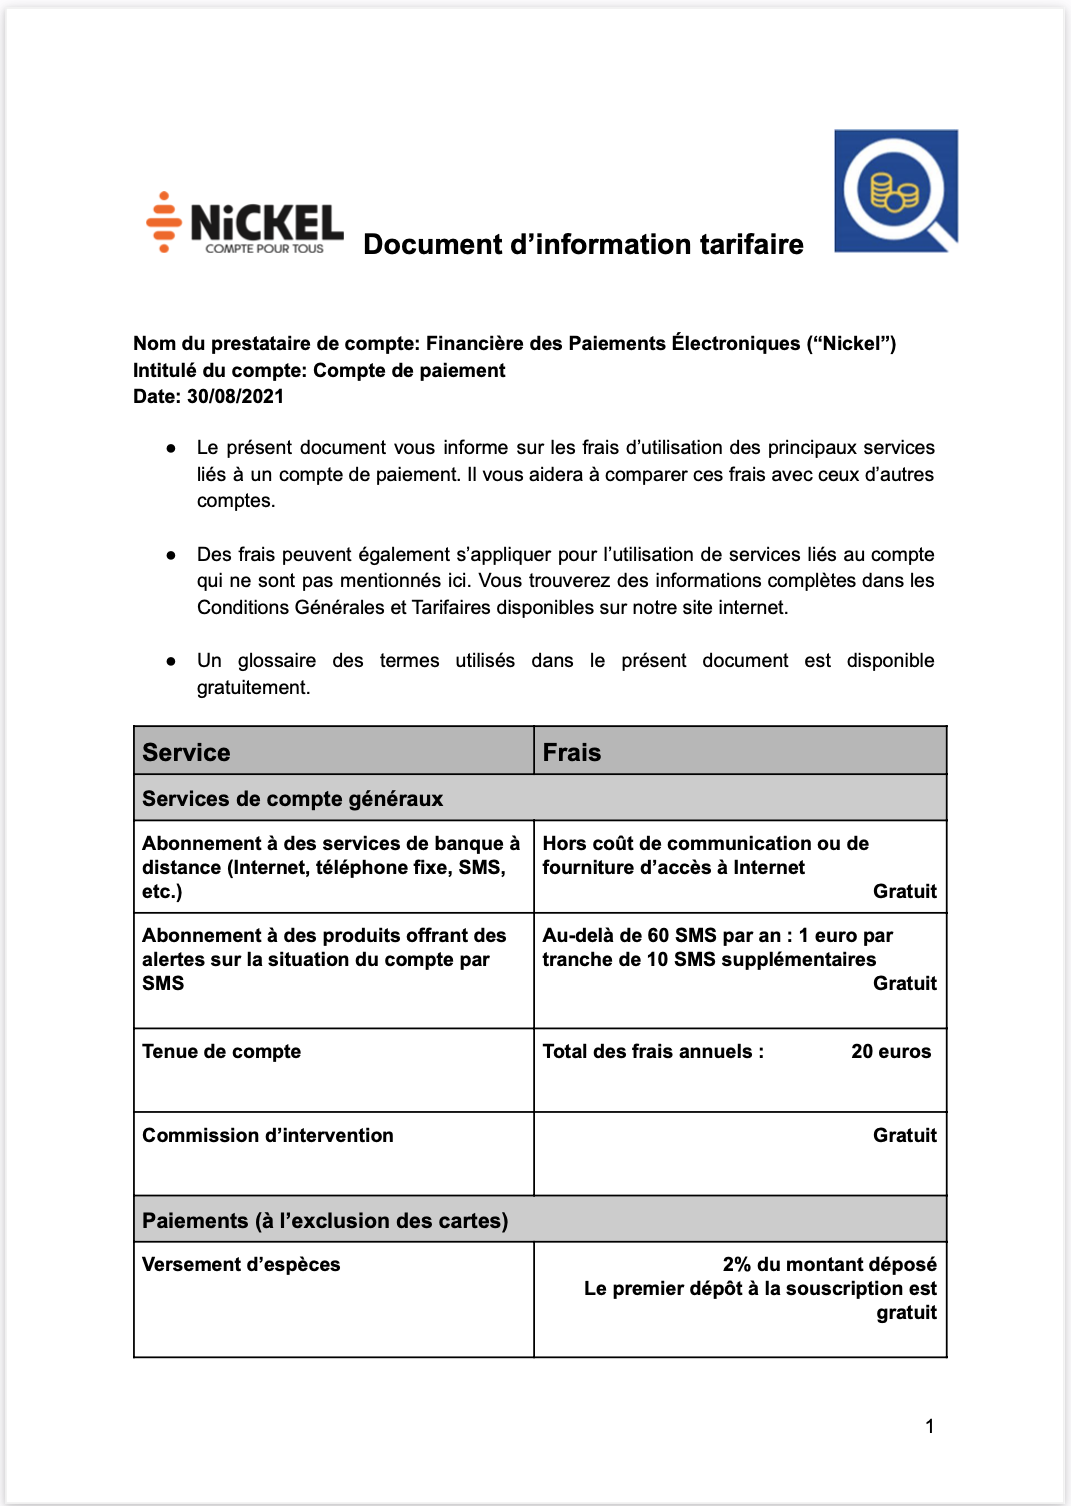 Document informations tarifaires Nickel